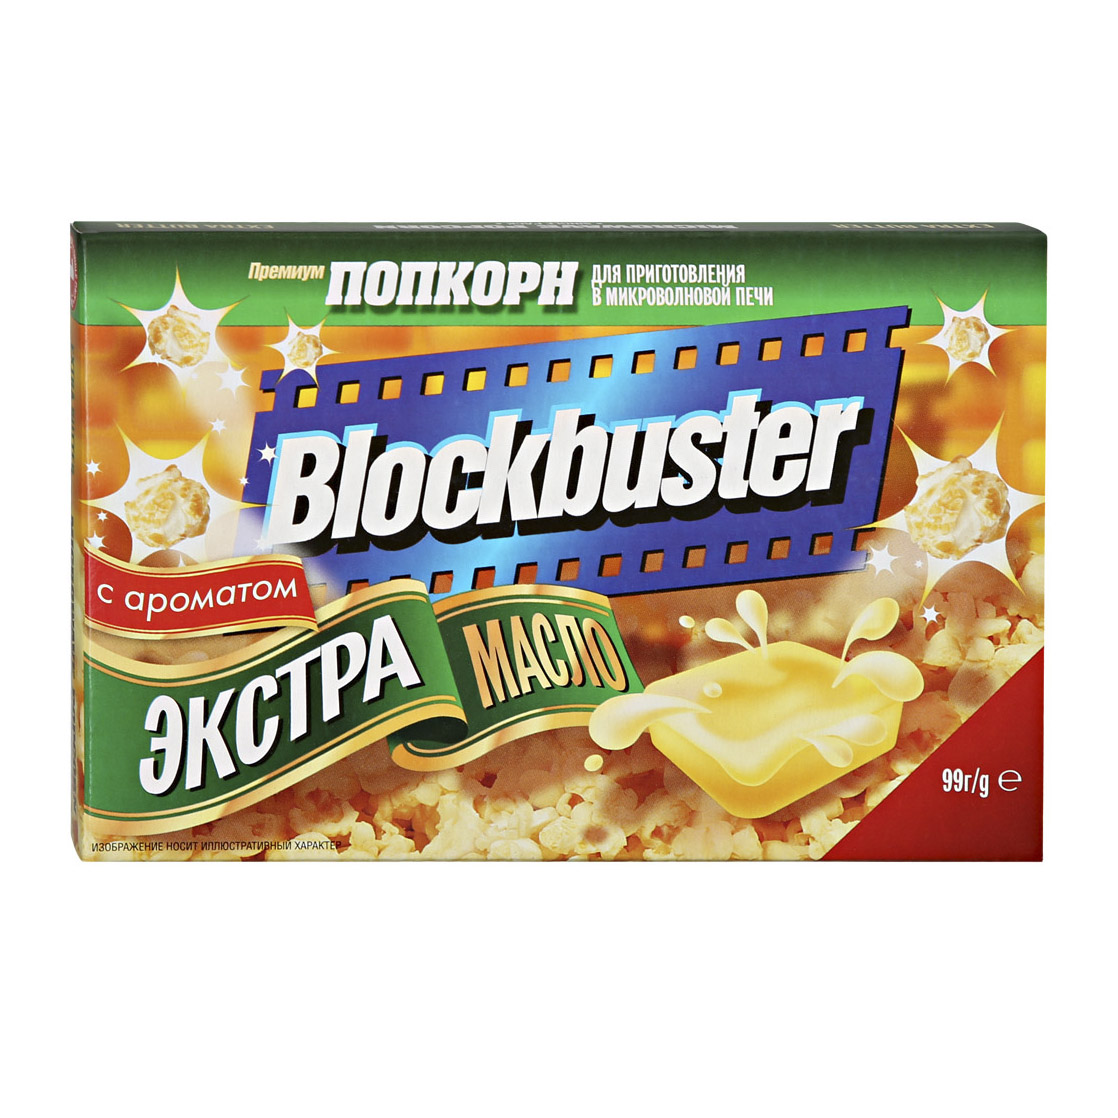 Попкорн Blockbuster Экстра масло 99 г масло arla natura сливочное 82% бзмж 180 гр